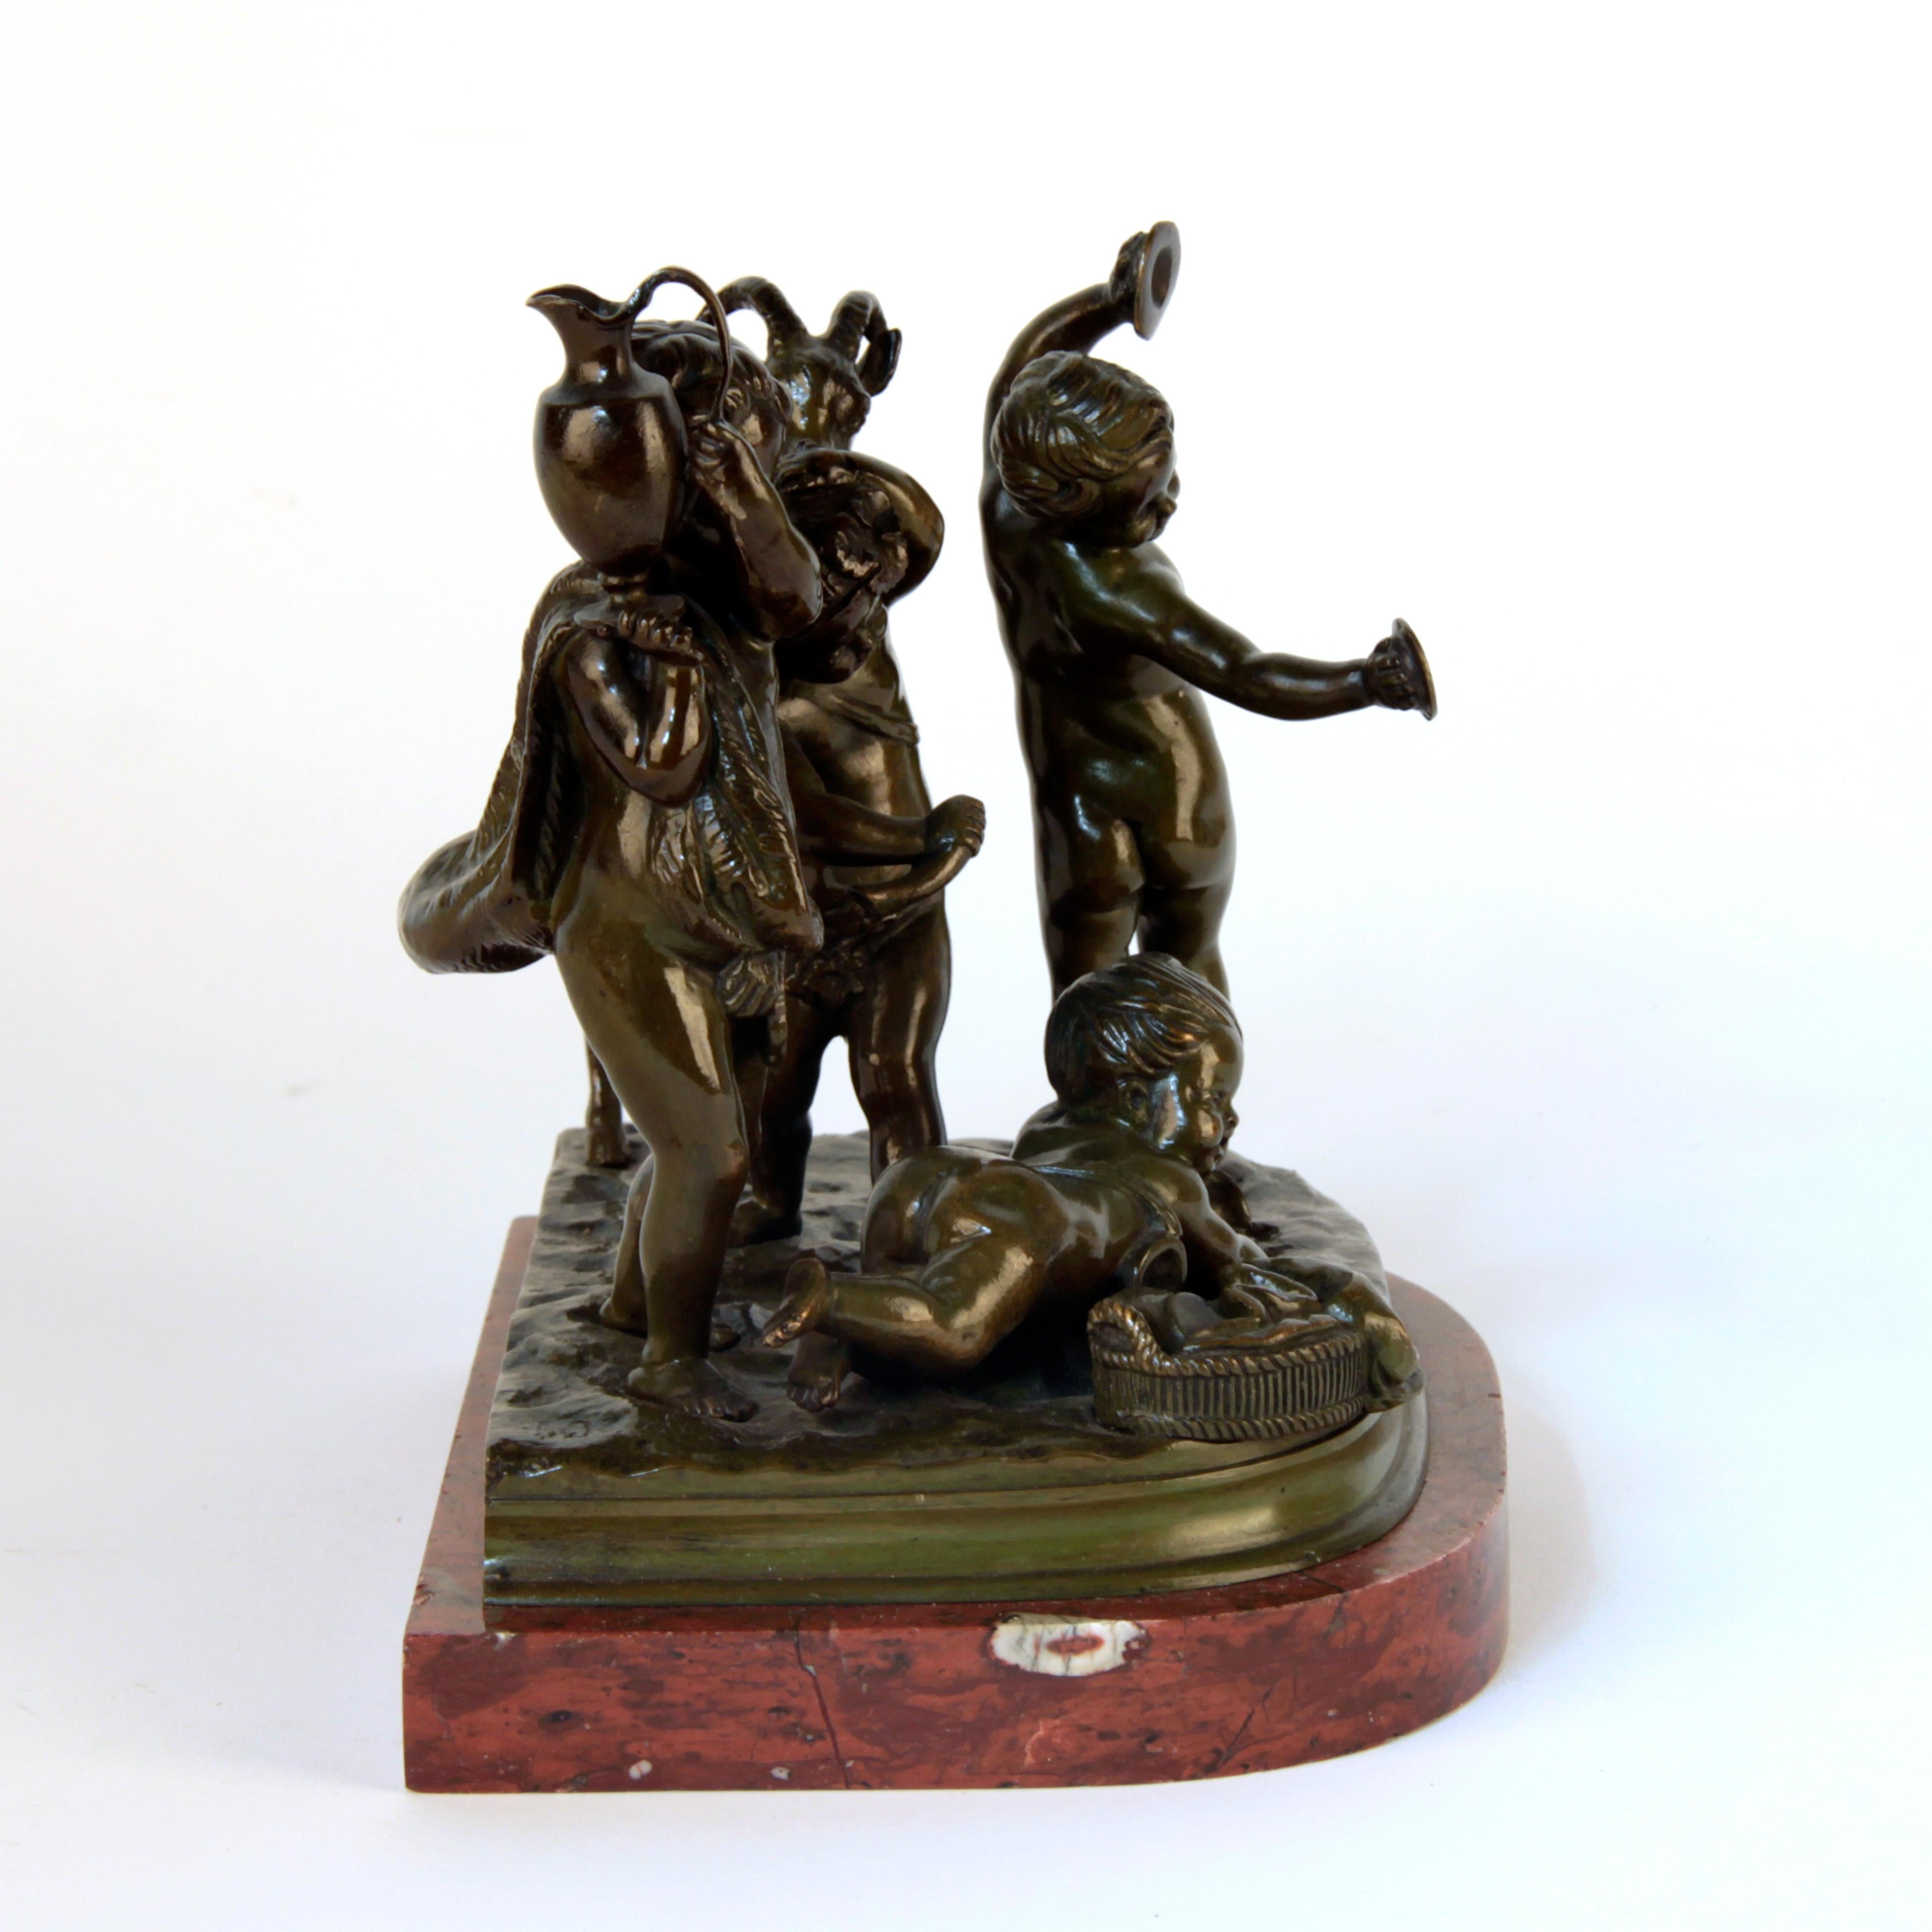 Puttis en bronze signé par Clodion, vers 1900
Belle patine et qualité
excellent état.